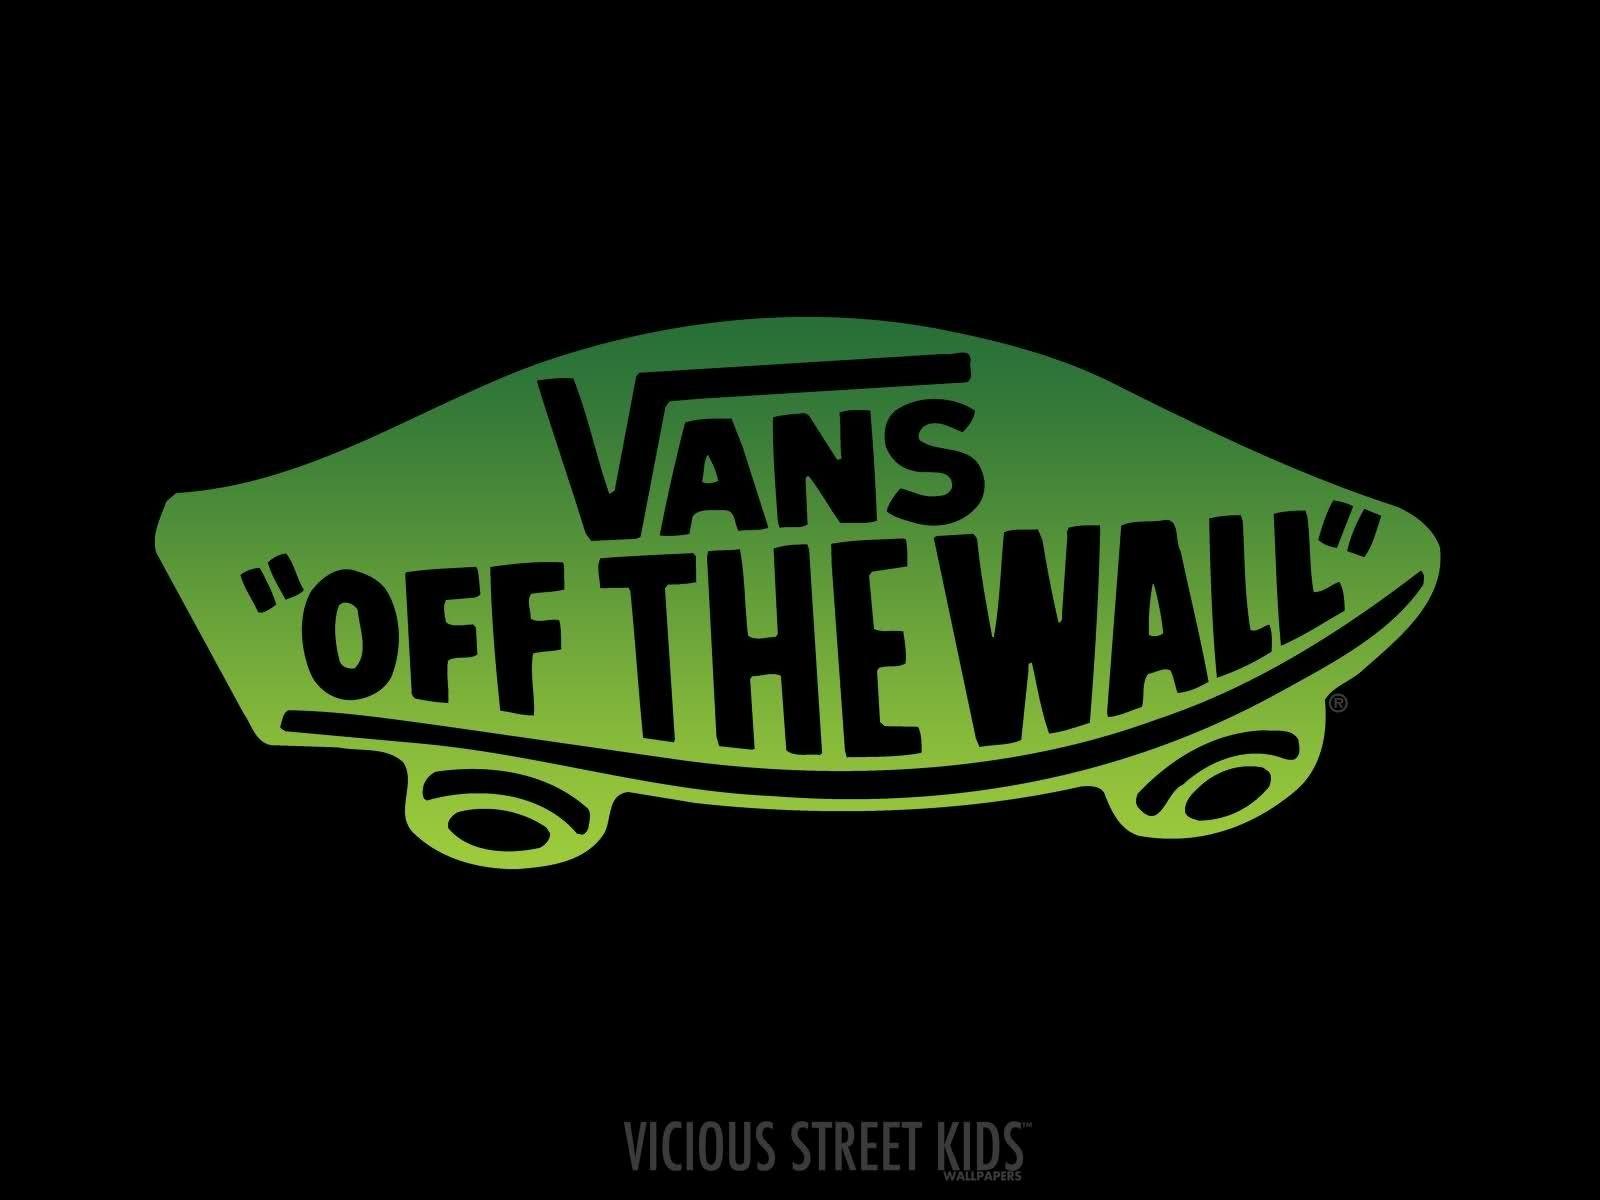 Off the Wall Skateboard Logo - Green Logo Vans Off The Wall Logo HD Wallpaper 1600x1200px Desktop ...